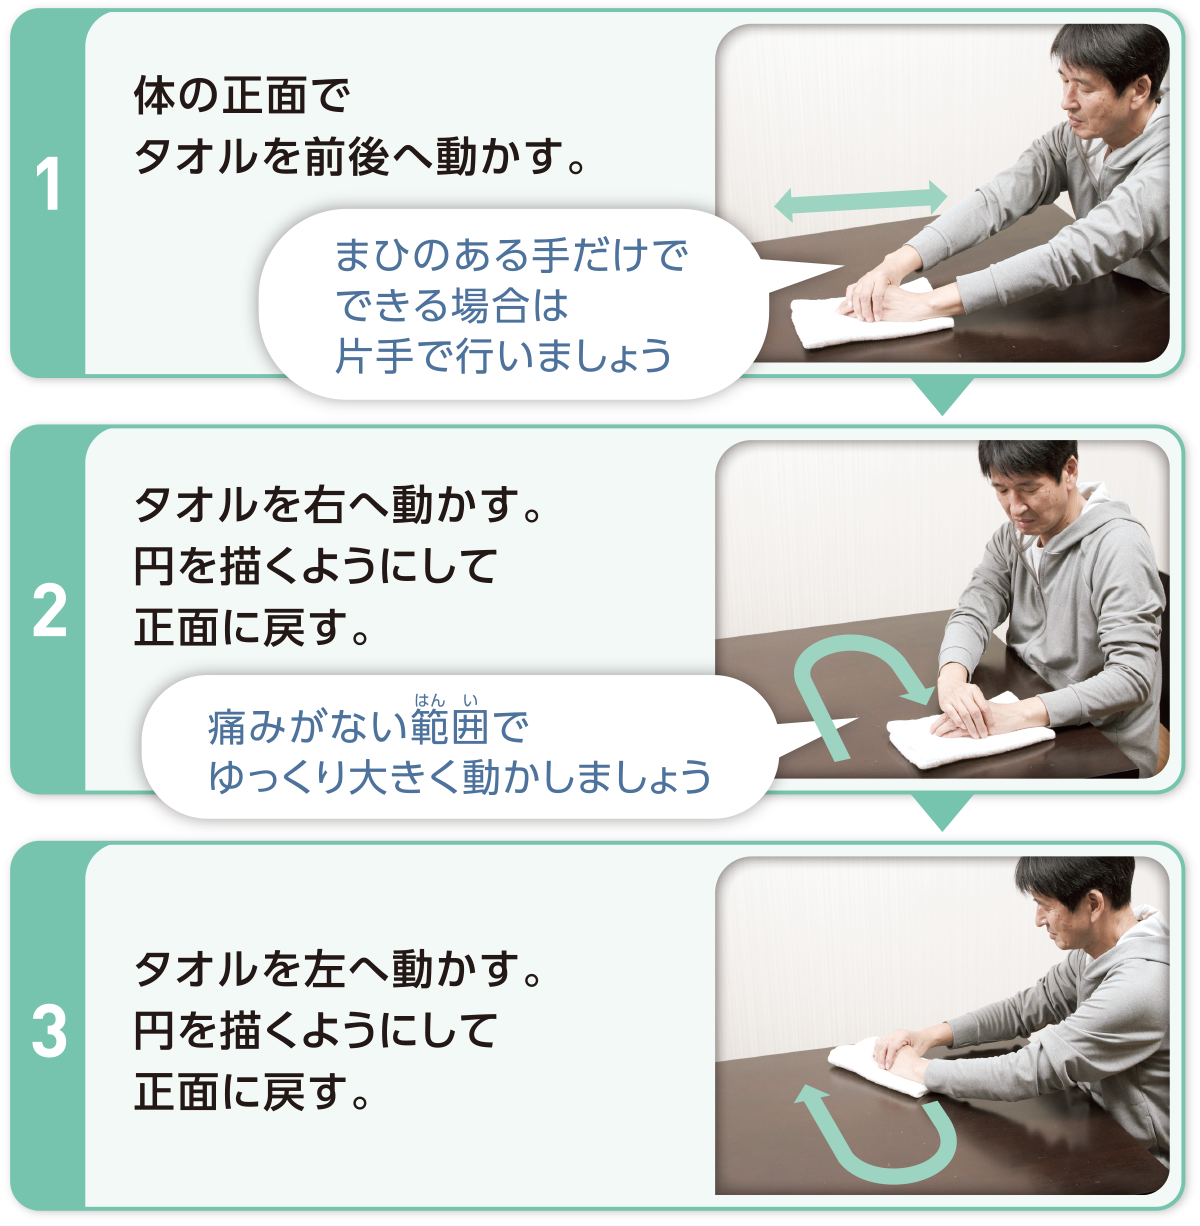 1：体の正面でタオルを前後へ動かす。 まひのある手だけでできる場合は片手で行いましょう　2：タオルを右へ動かす。円を描くようにして正面に戻す。 痛みがない範囲でゆっくり大きく動かしましょう　3：タオルを左へ動かす。円を描くようにして正面に戻す。